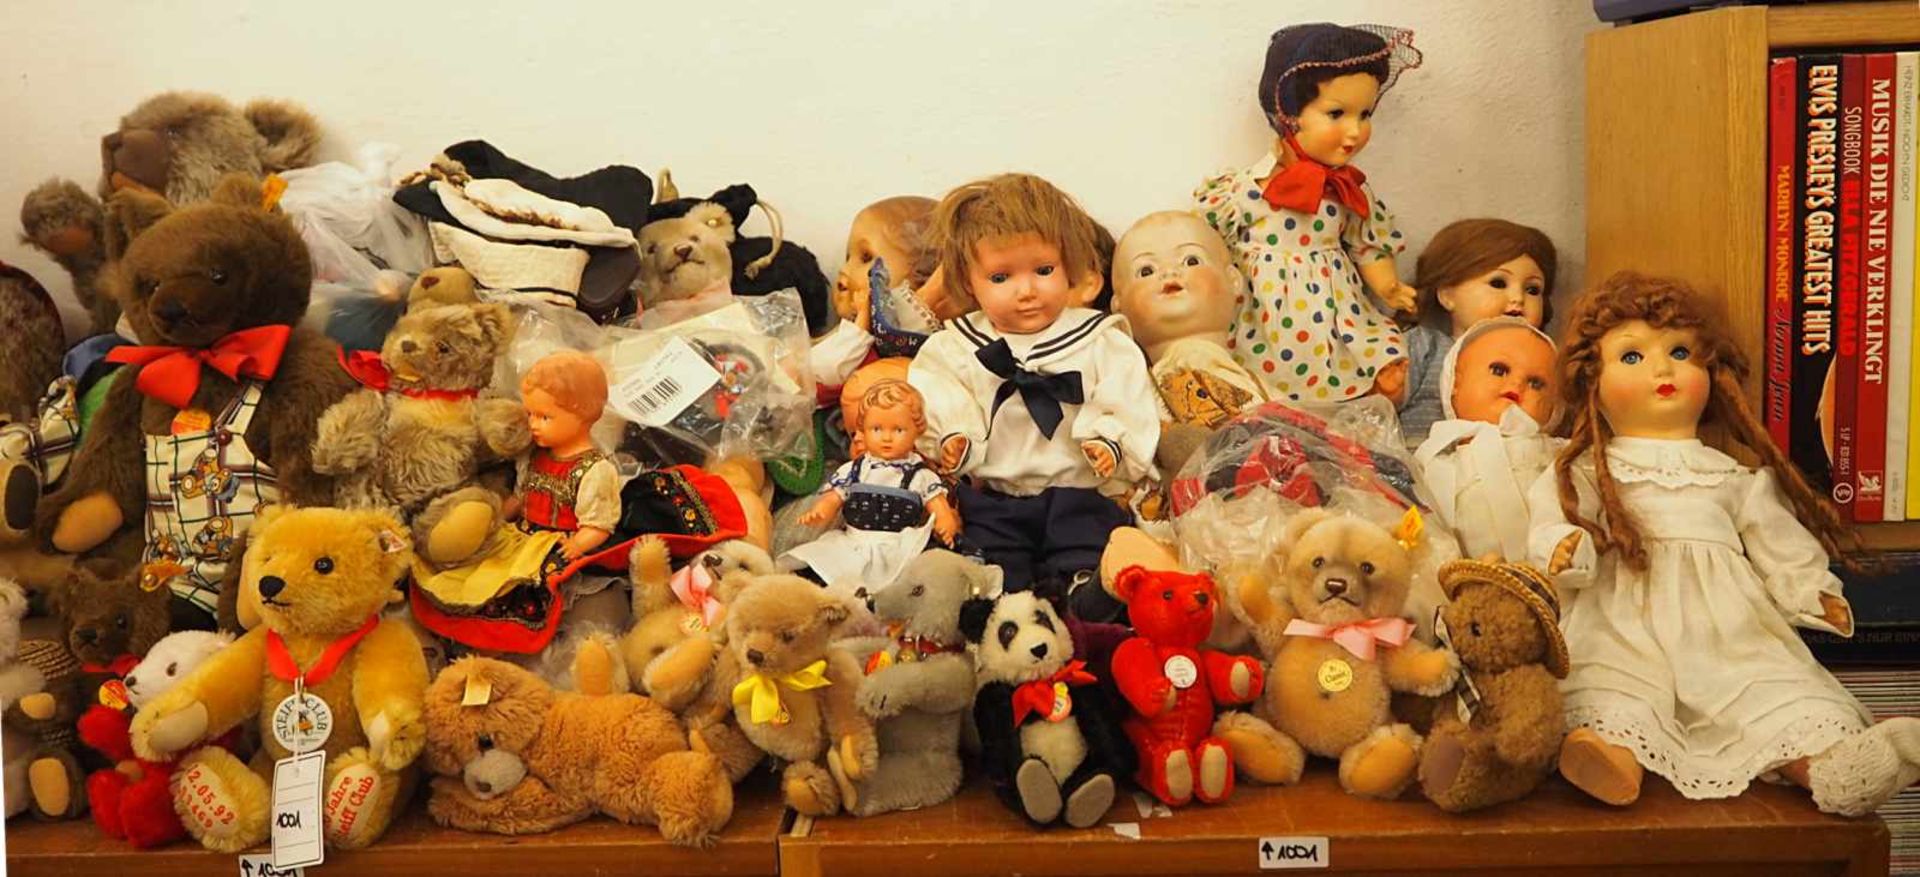 1 großes Konvolut Puppen, Puppenbekleidung, Stofftiere, Zubehör u.a.STEIFF, HERMANN, SCHILDKRÖT, - Bild 3 aus 3